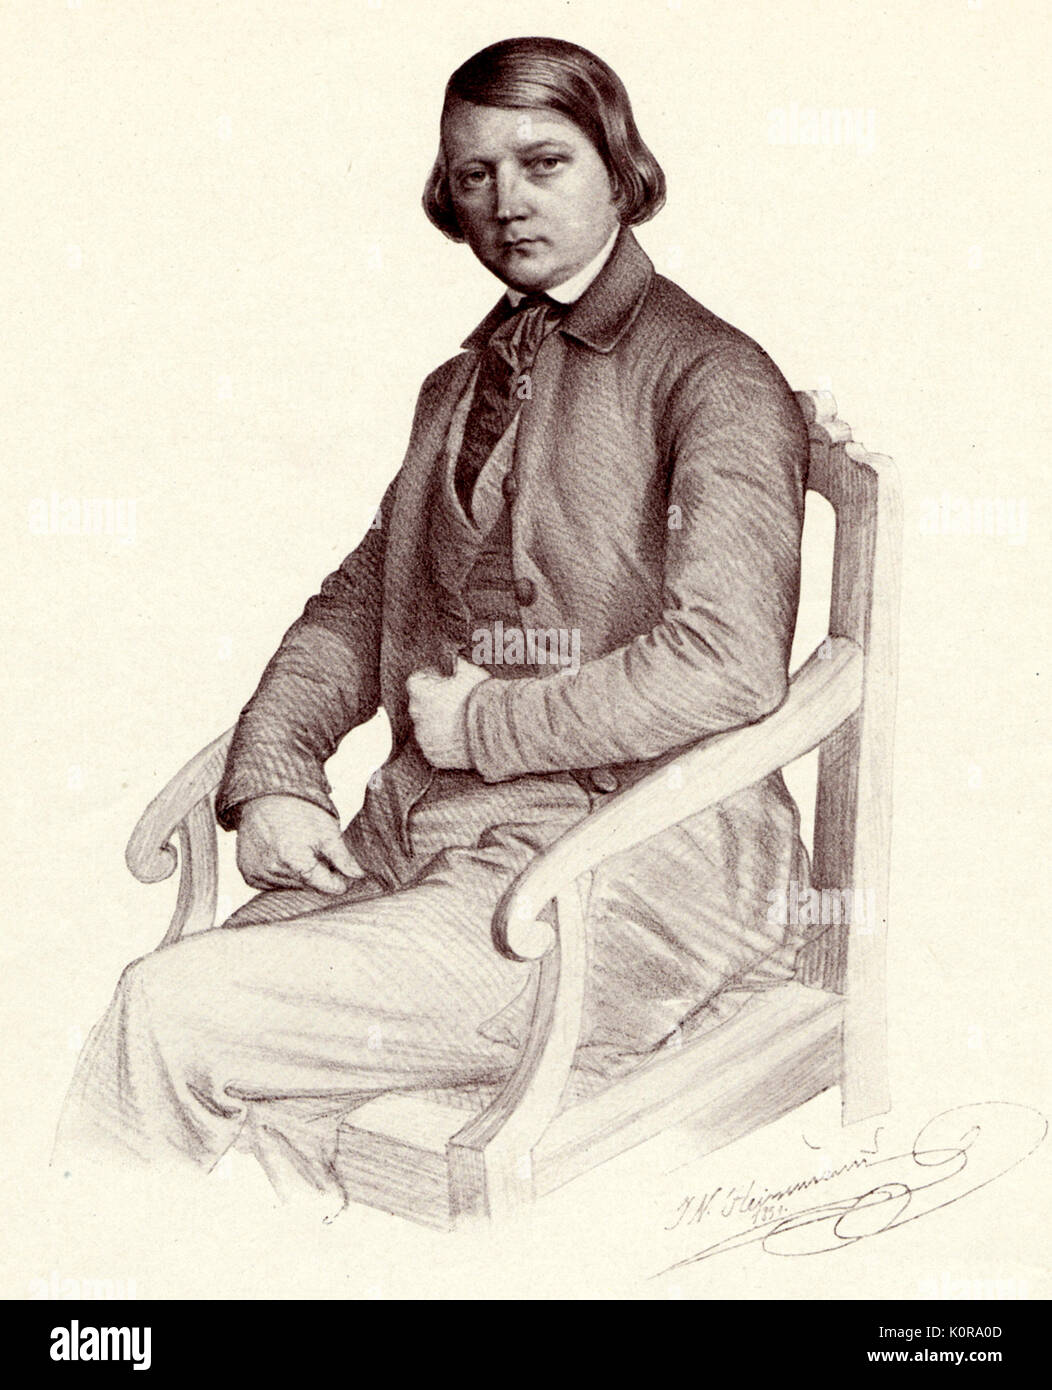 Robert Schumann - portrait de compositeur allemand par J N Heinemann. 1810-1856 Banque D'Images